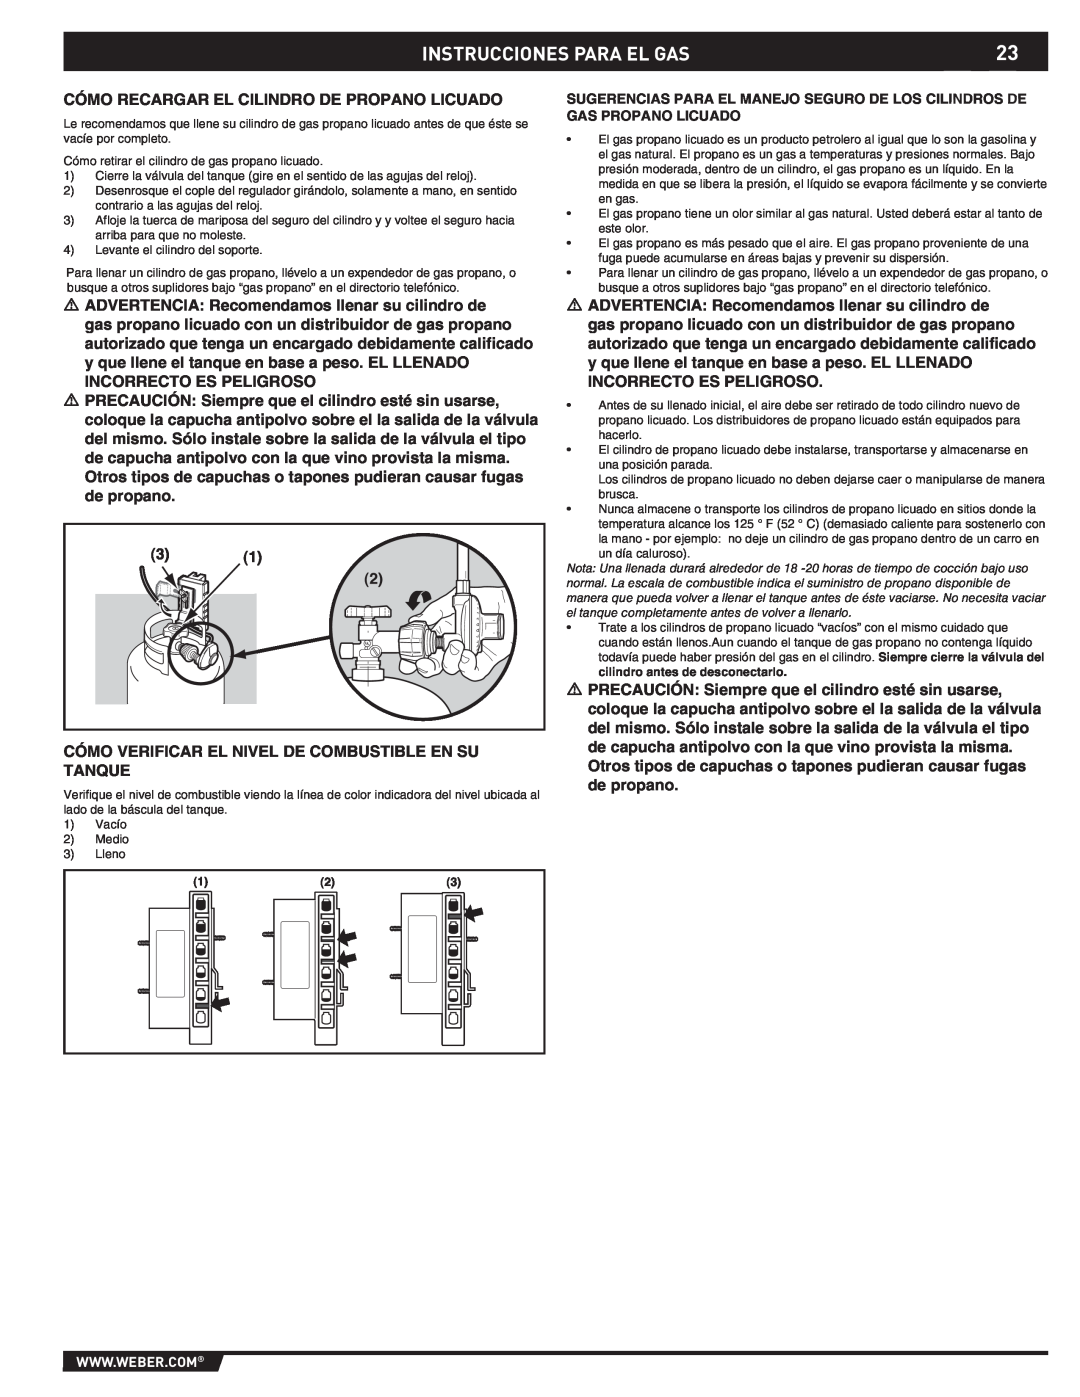 Weber 43176 manual Instrucciones Para El Gas, Cómo Recargar El Cilindro De Propano Licuado 